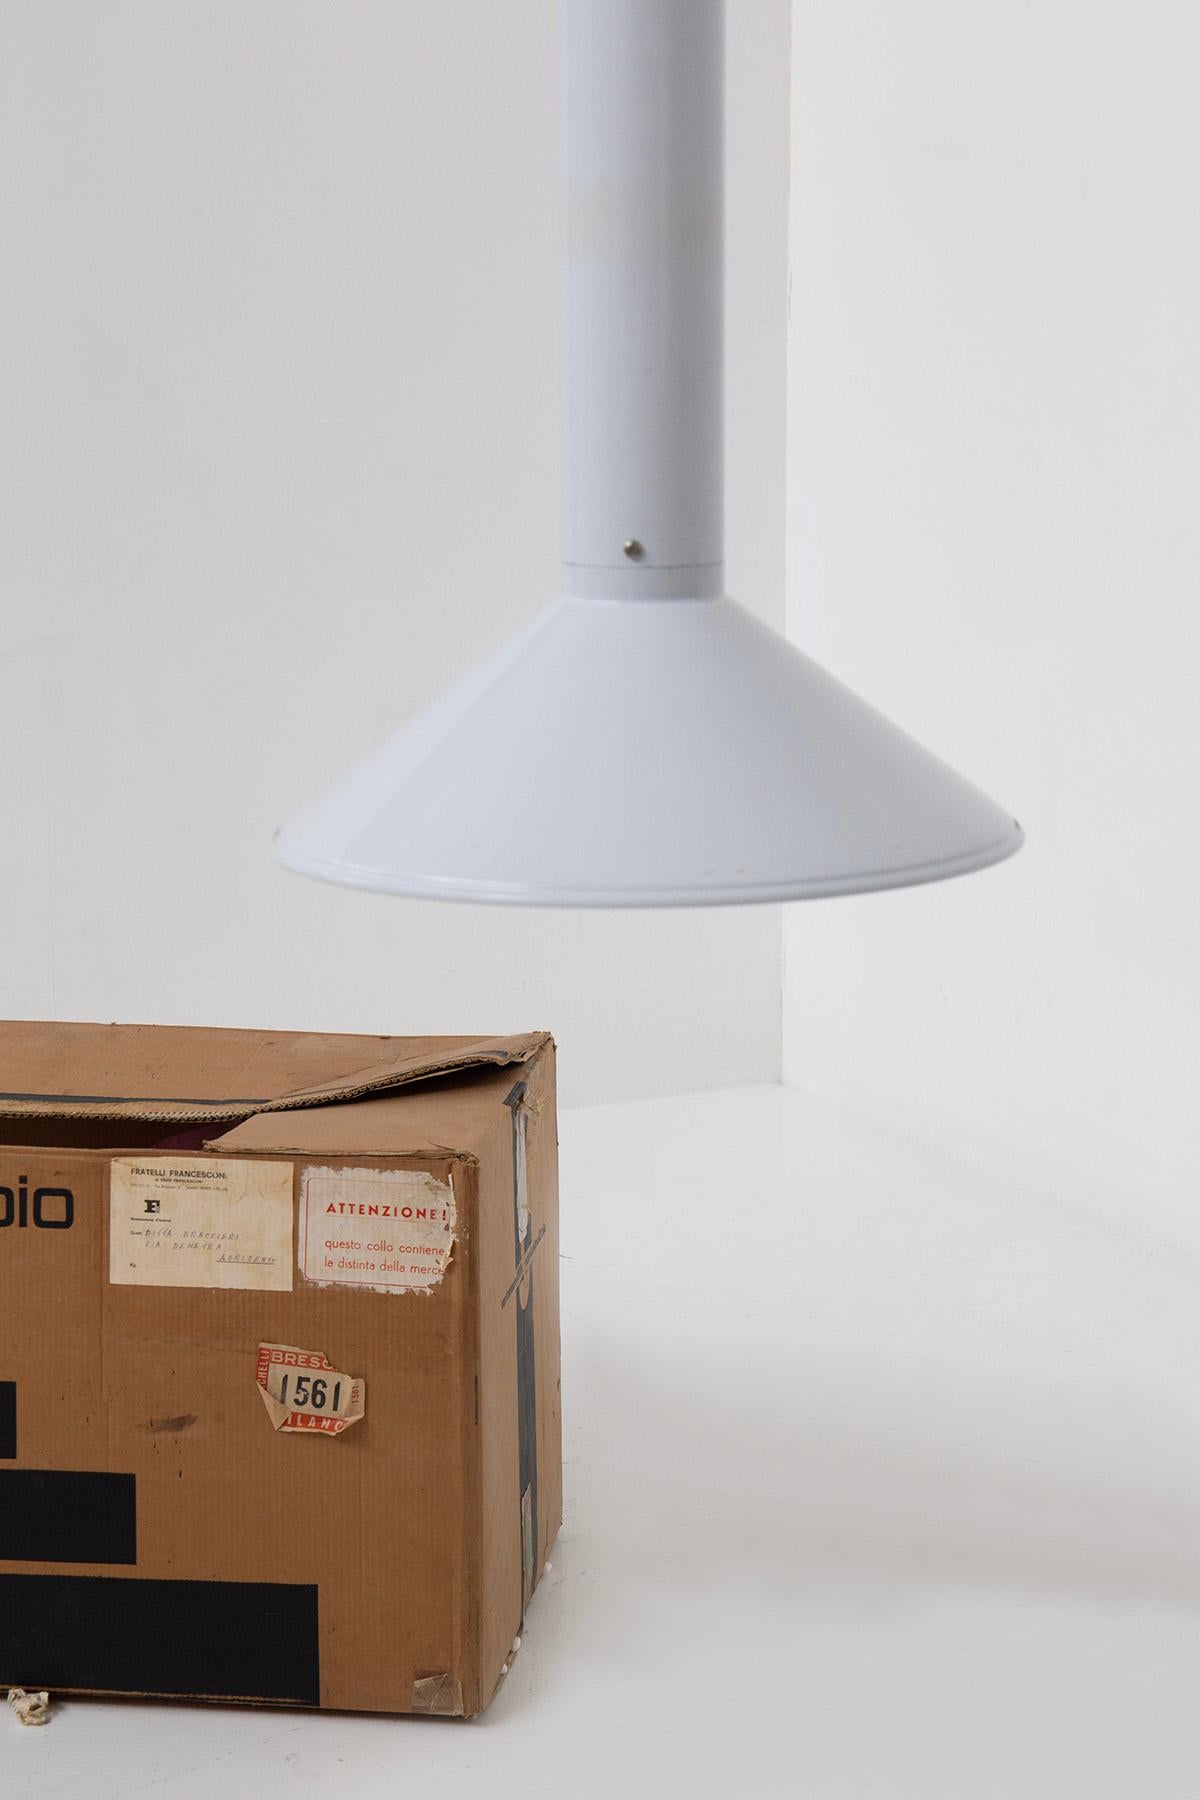 Italian Umberto Riva Suspension Lamp for Bieffeplast, original box 2165